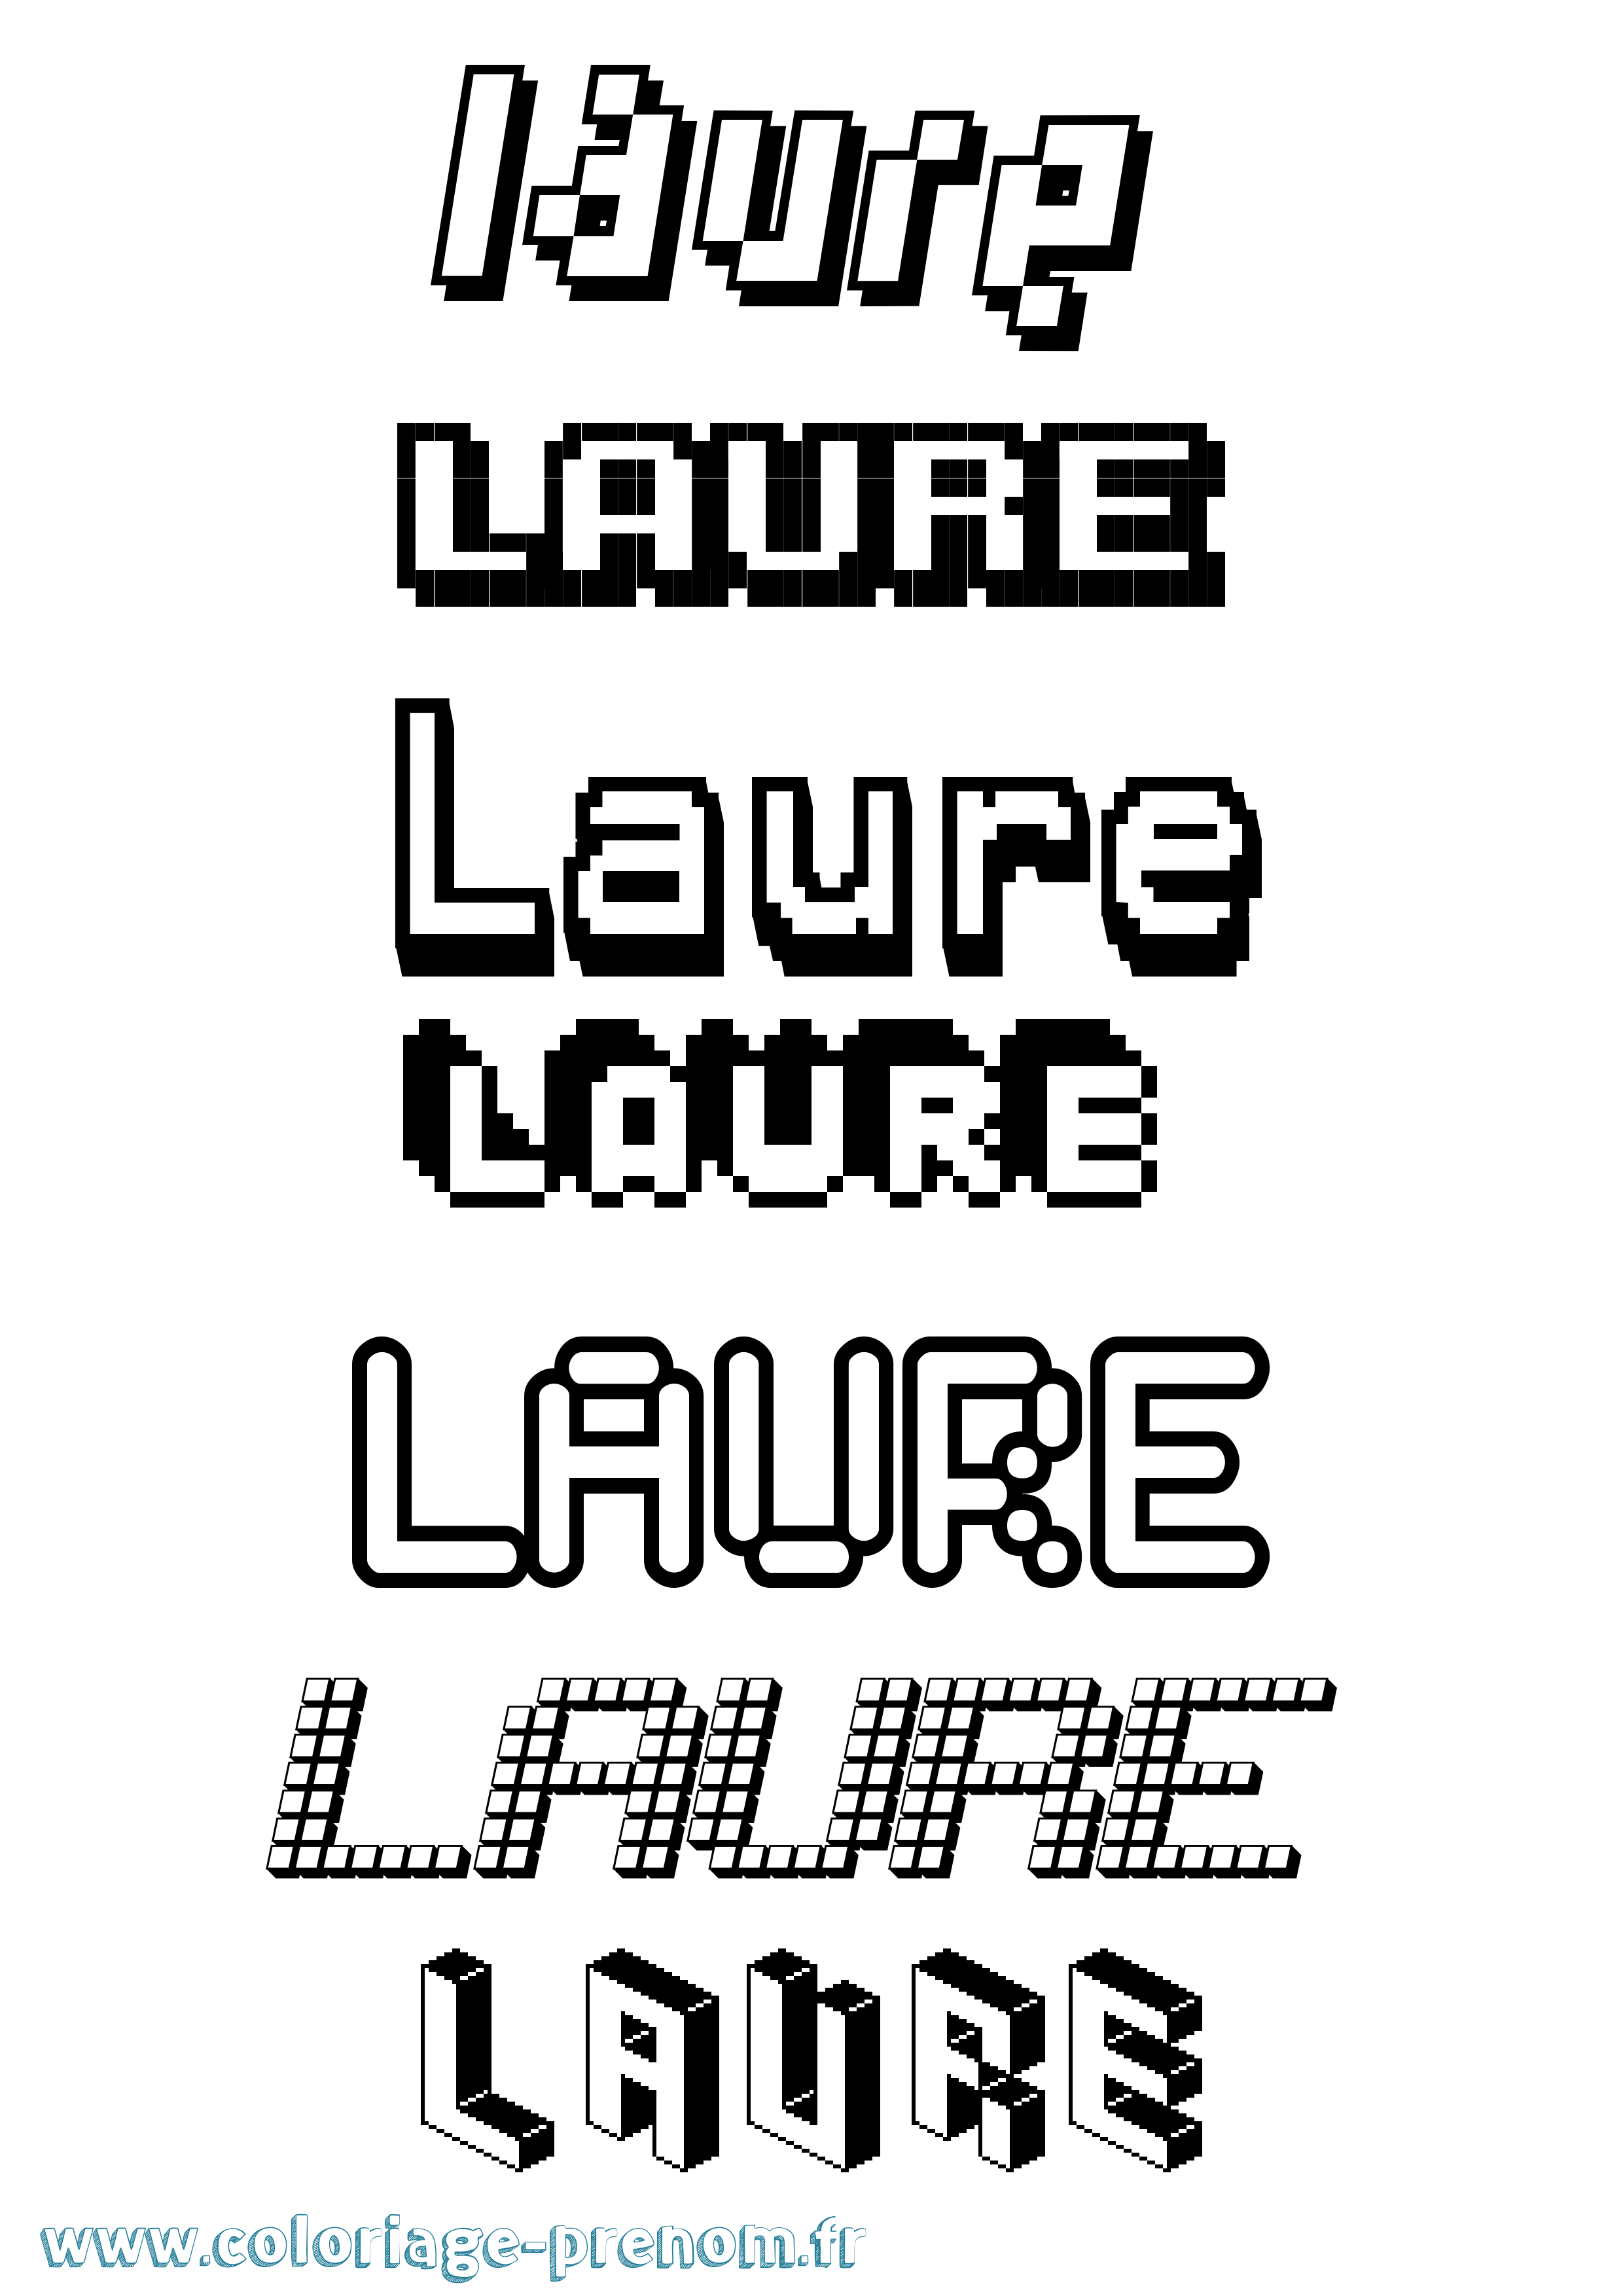 Coloriage prénom Laure Pixel